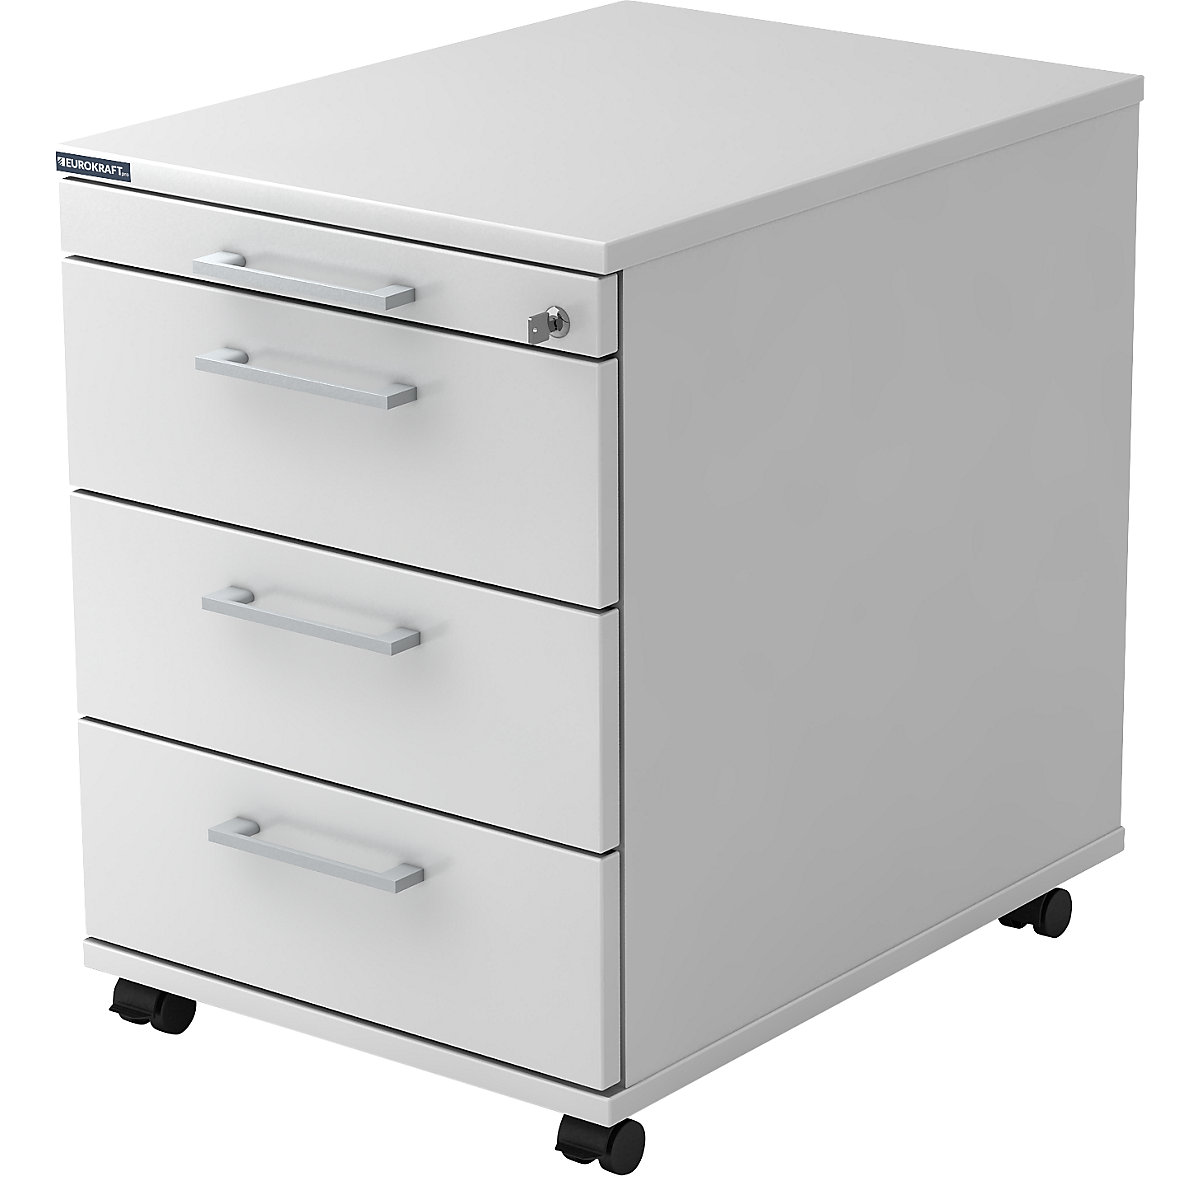 Mobile pedestal – eurokraft pro, 1 utensil drawer, 3 drawers, depth 580 mm, white-12